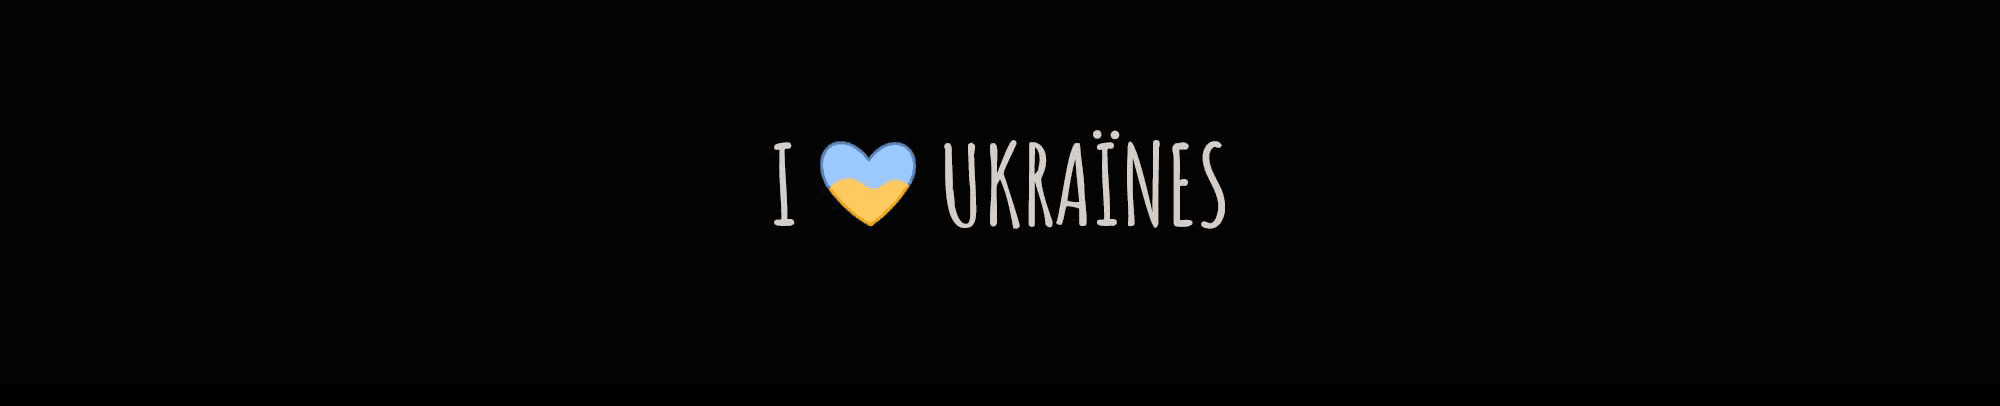 Ukraines_land banner